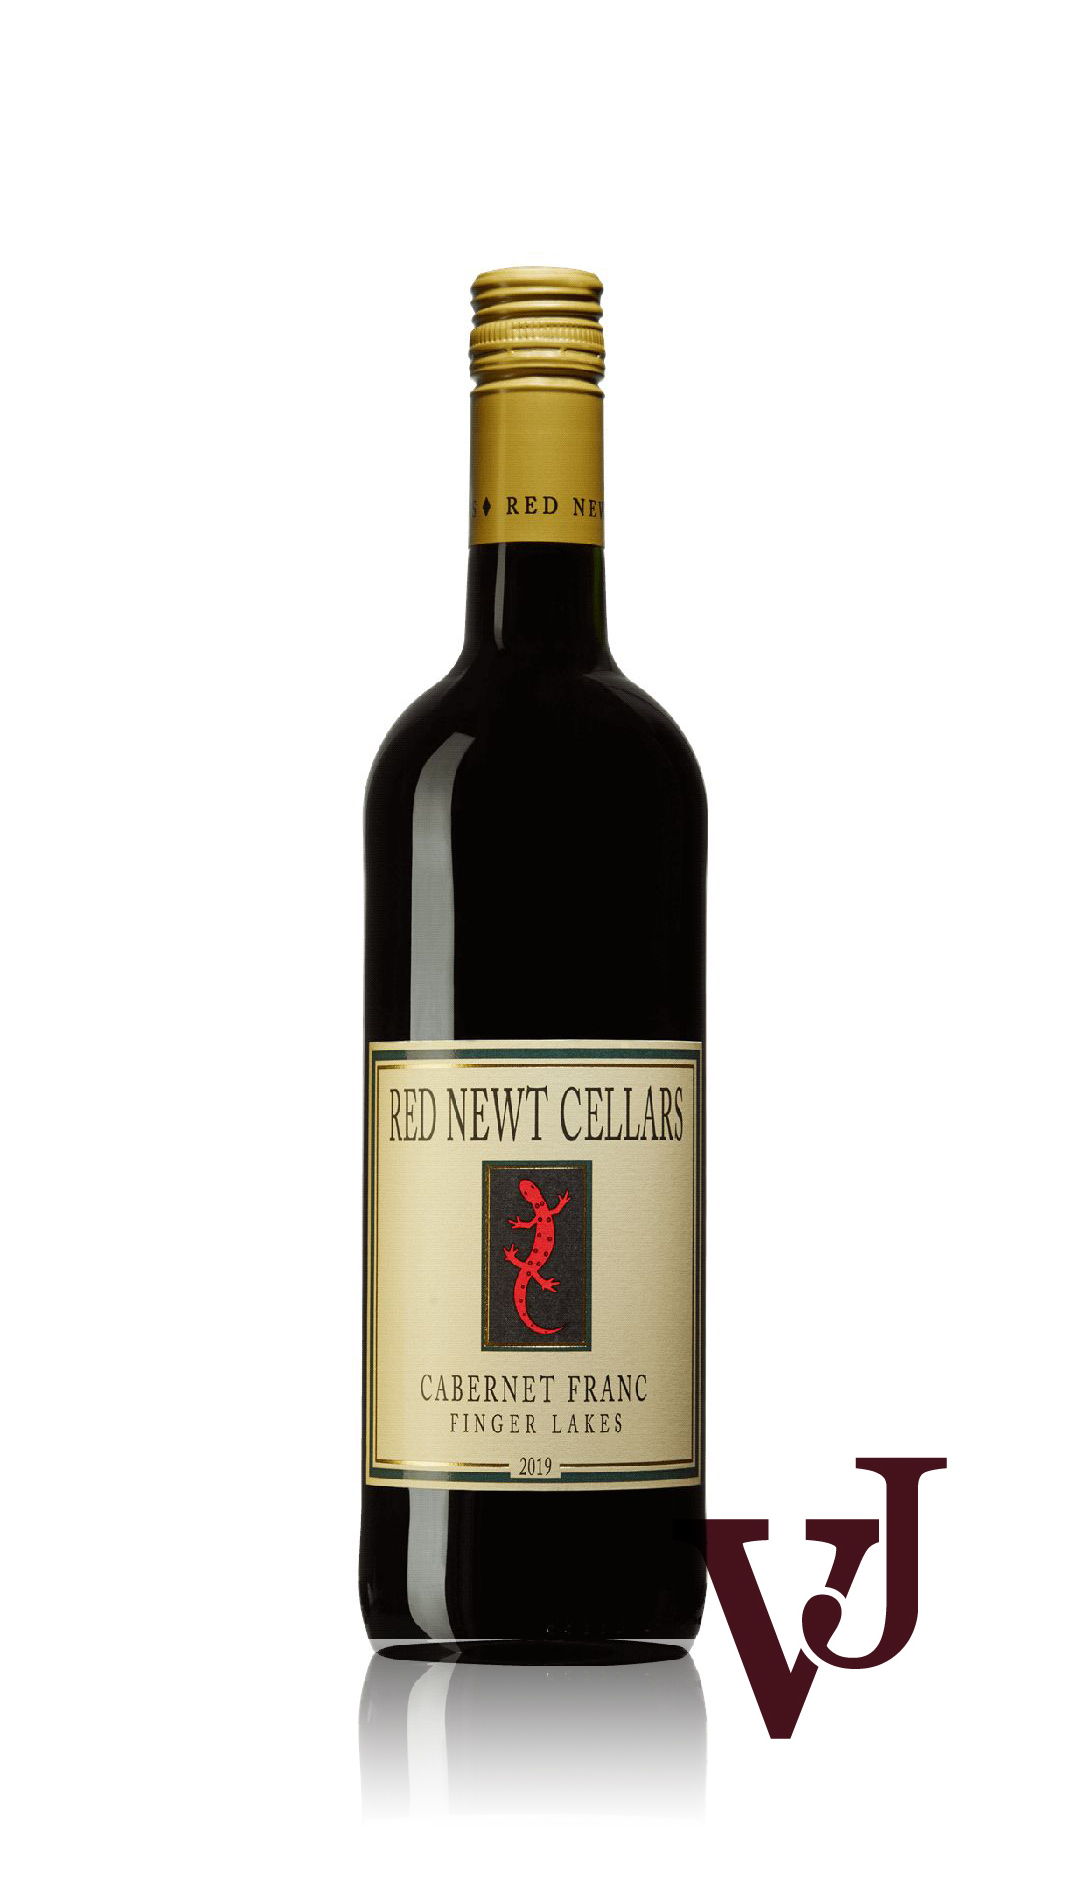 Rött Vin - Red Newt Cellars Cabernet Franc 2019 artikel nummer 901701 från producenten Red Newt Cellars från området USA